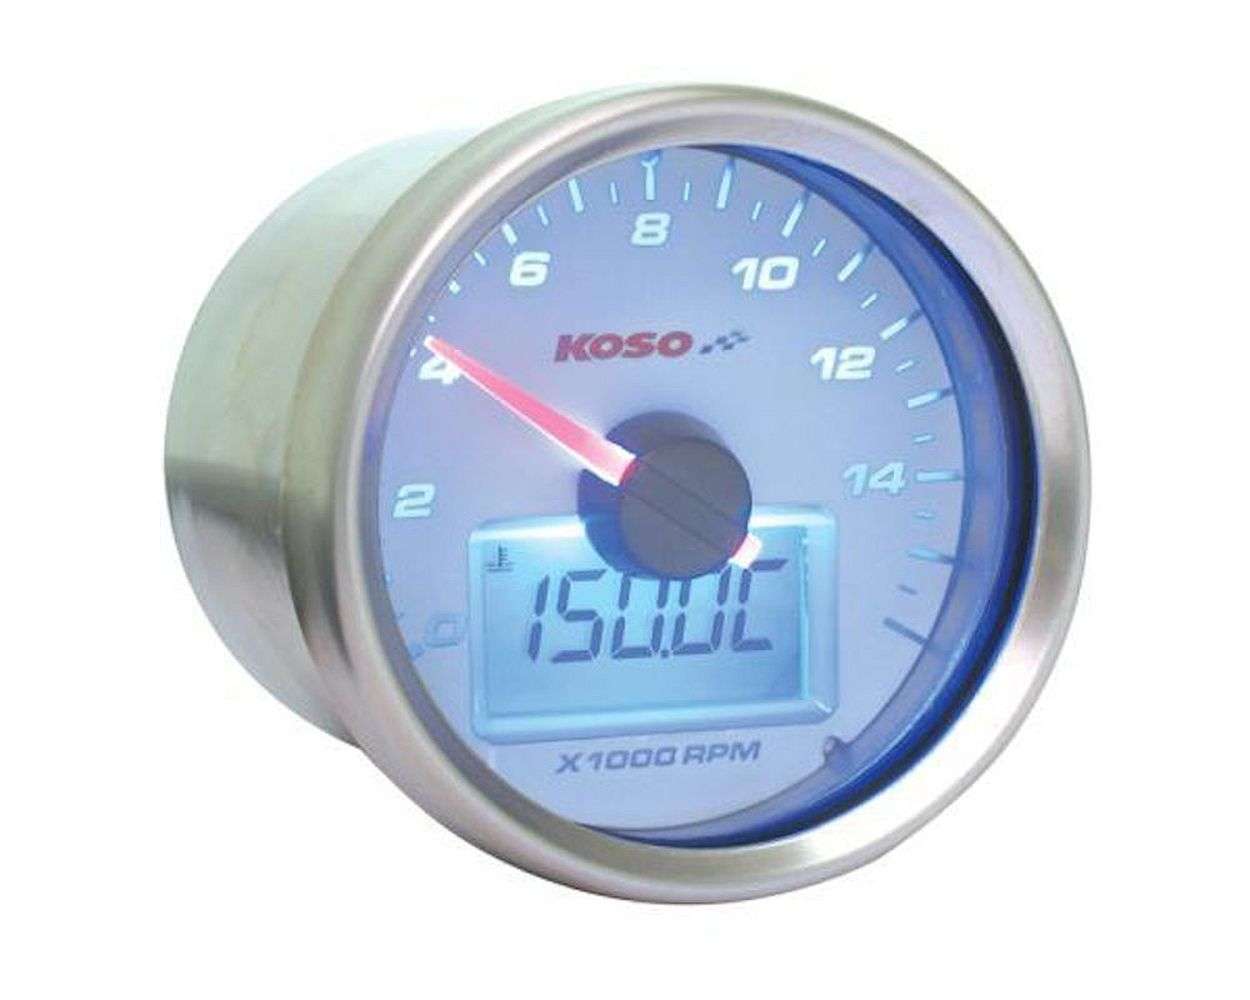 Motorrad Digital Thermometer, Temperaturmesser, Universal Motorrad